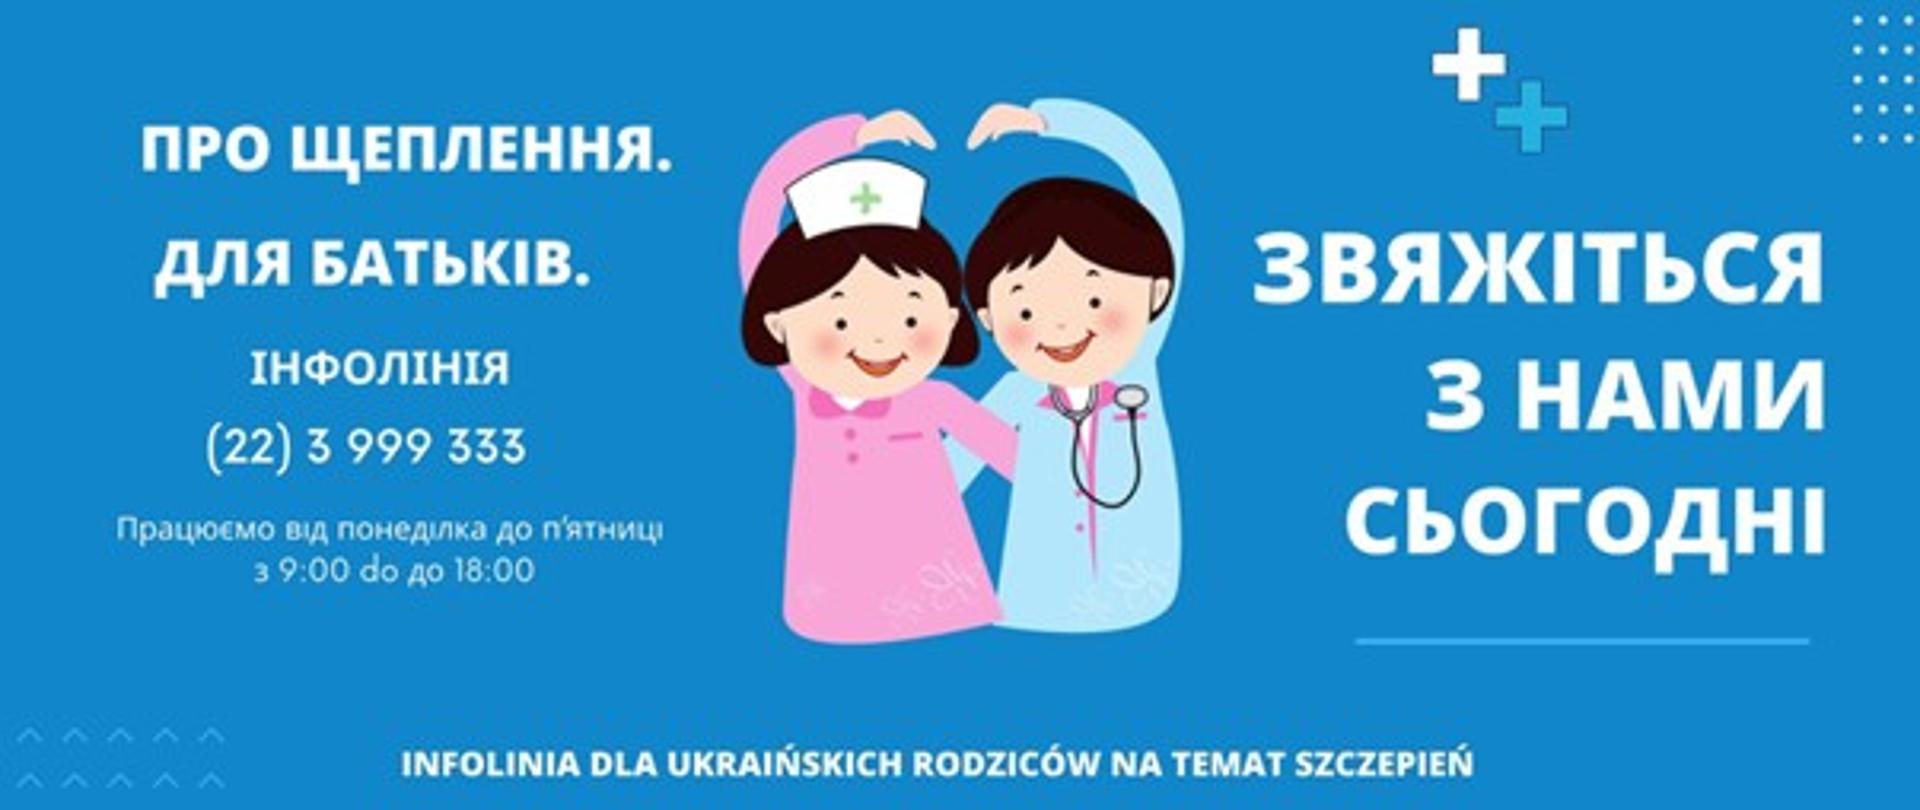 Informacje dla ukraińskich rodziców